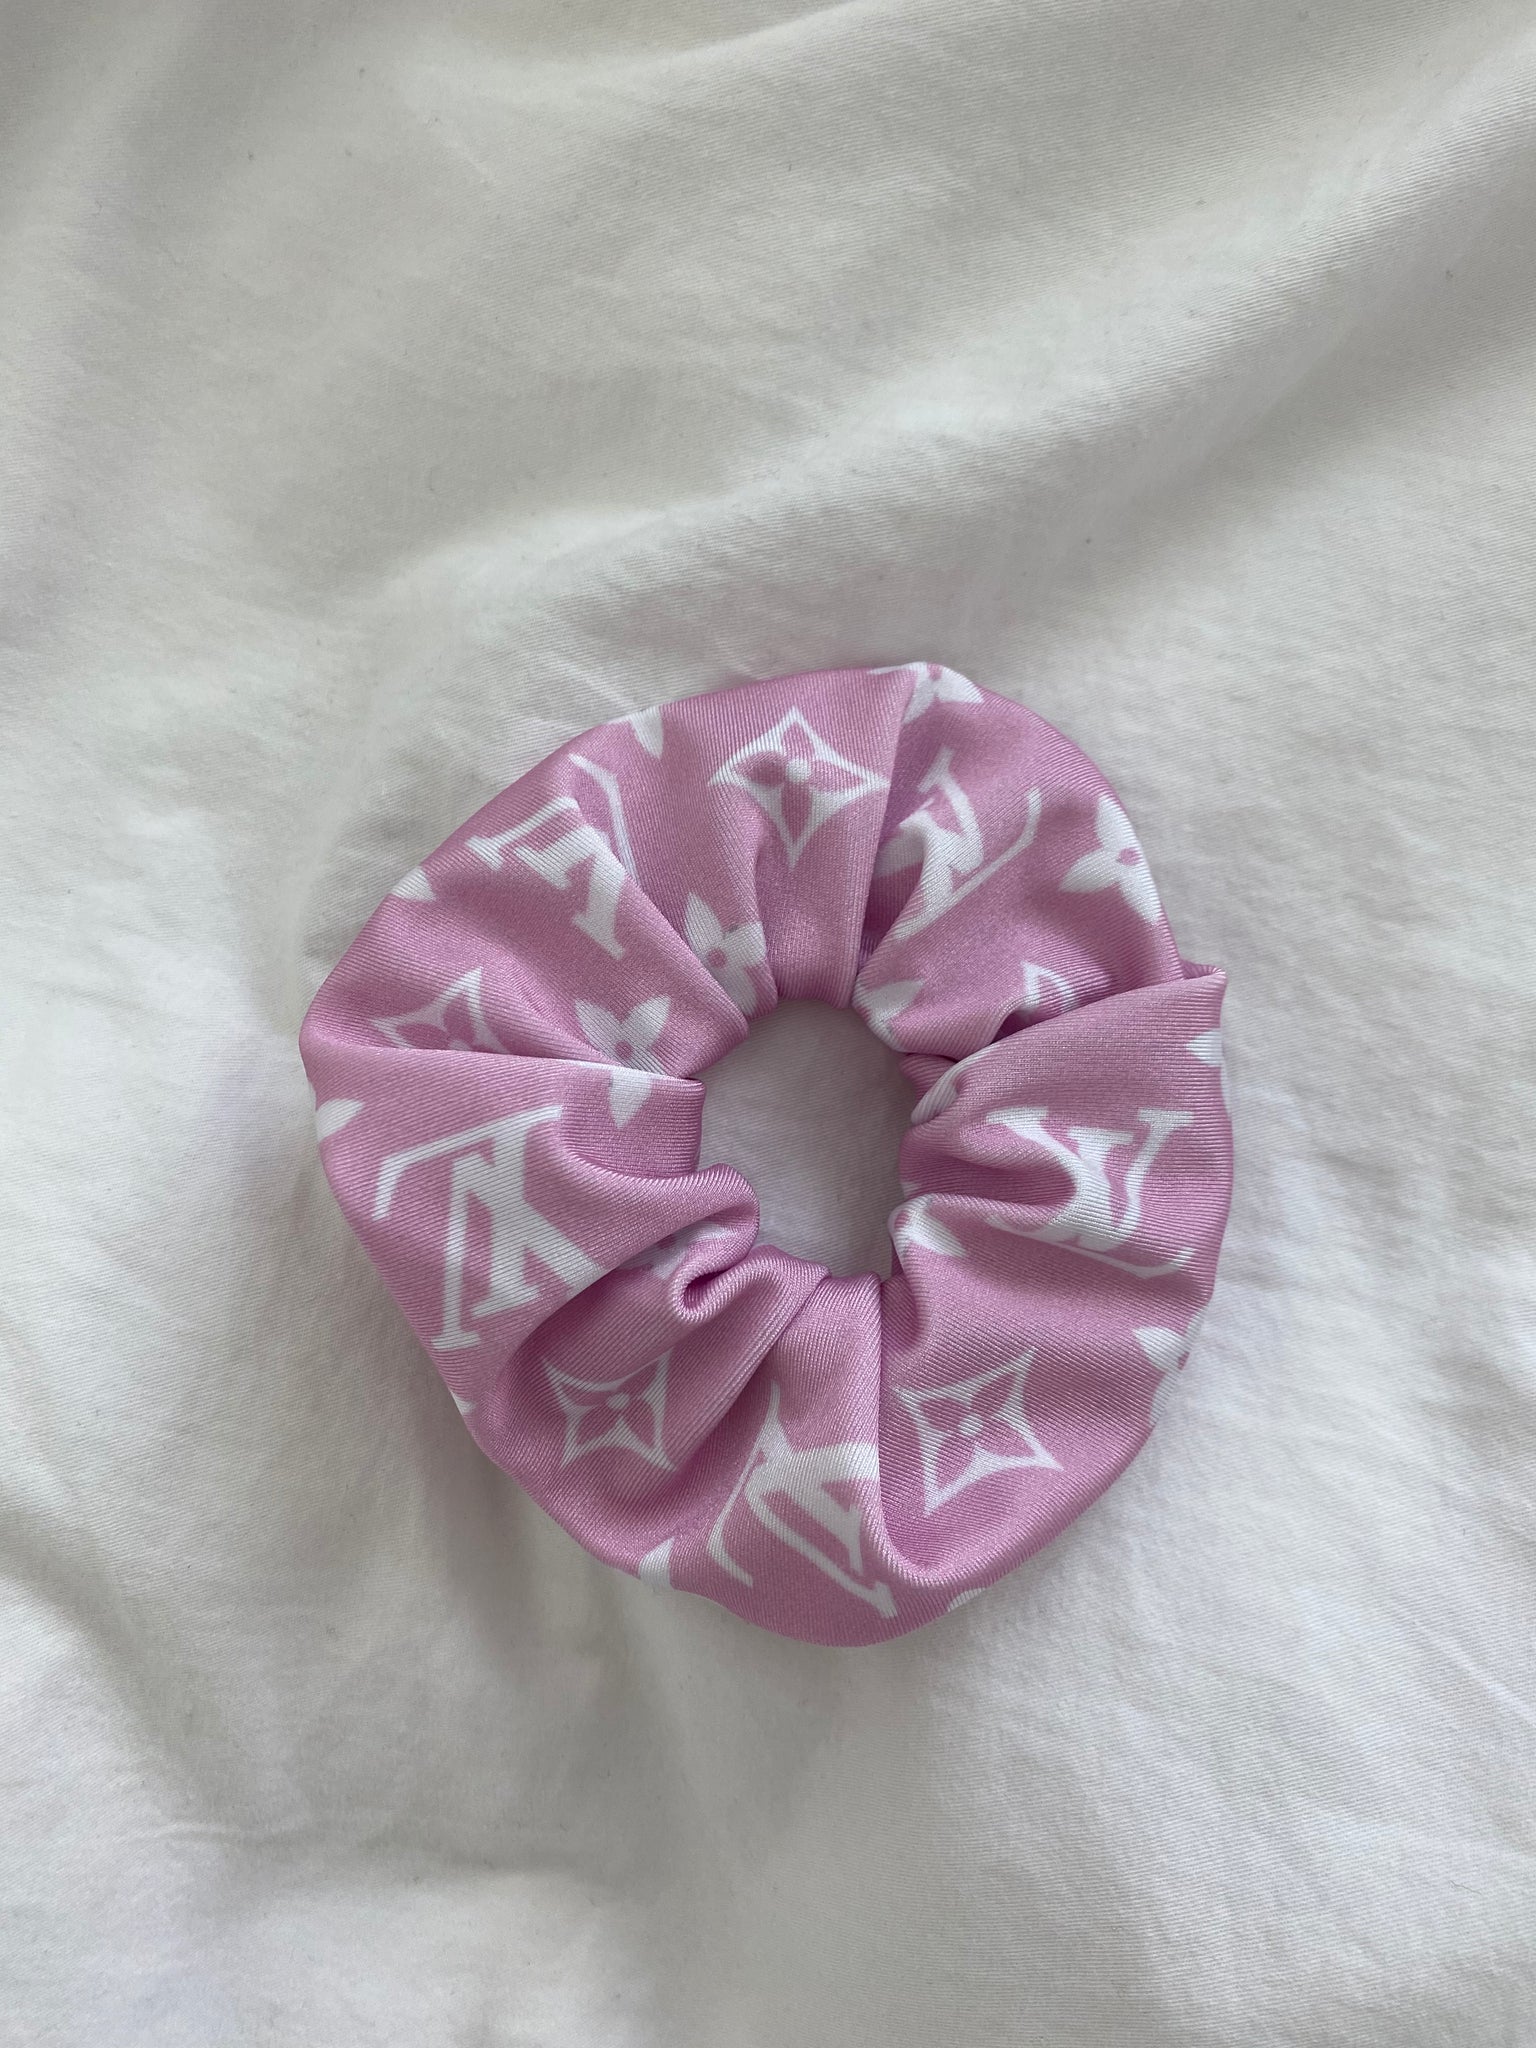 LV Inspired Bubblegum Pink Scrunchie - Designer Handmade